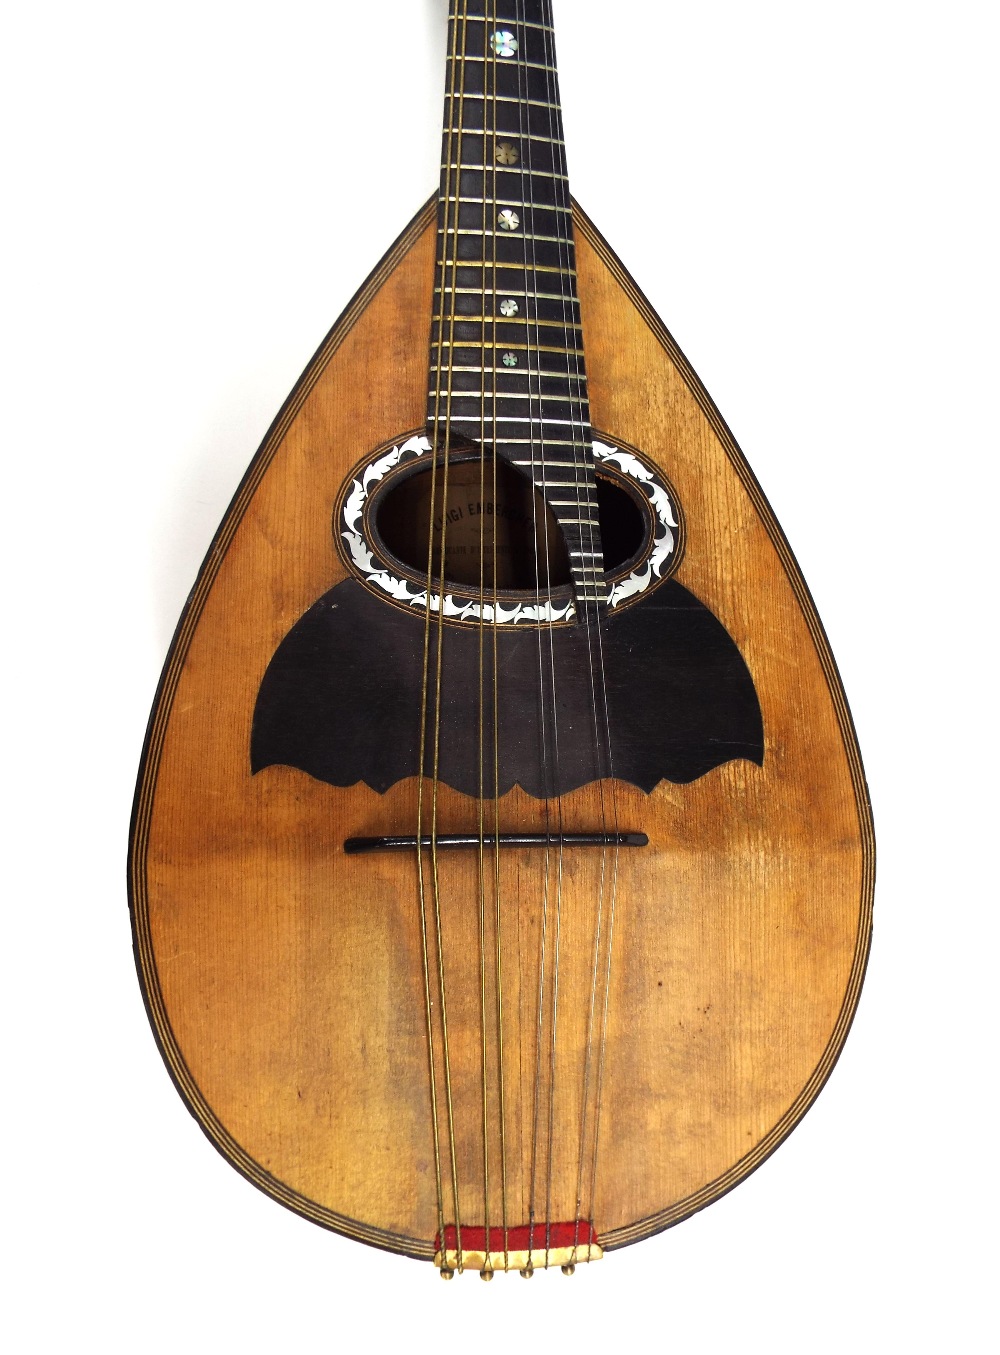 Fine Neapolitan mandolin by and labelled Luigi Embergher, Fabricante d'istrumenti a Corda, via dei - Image 2 of 2